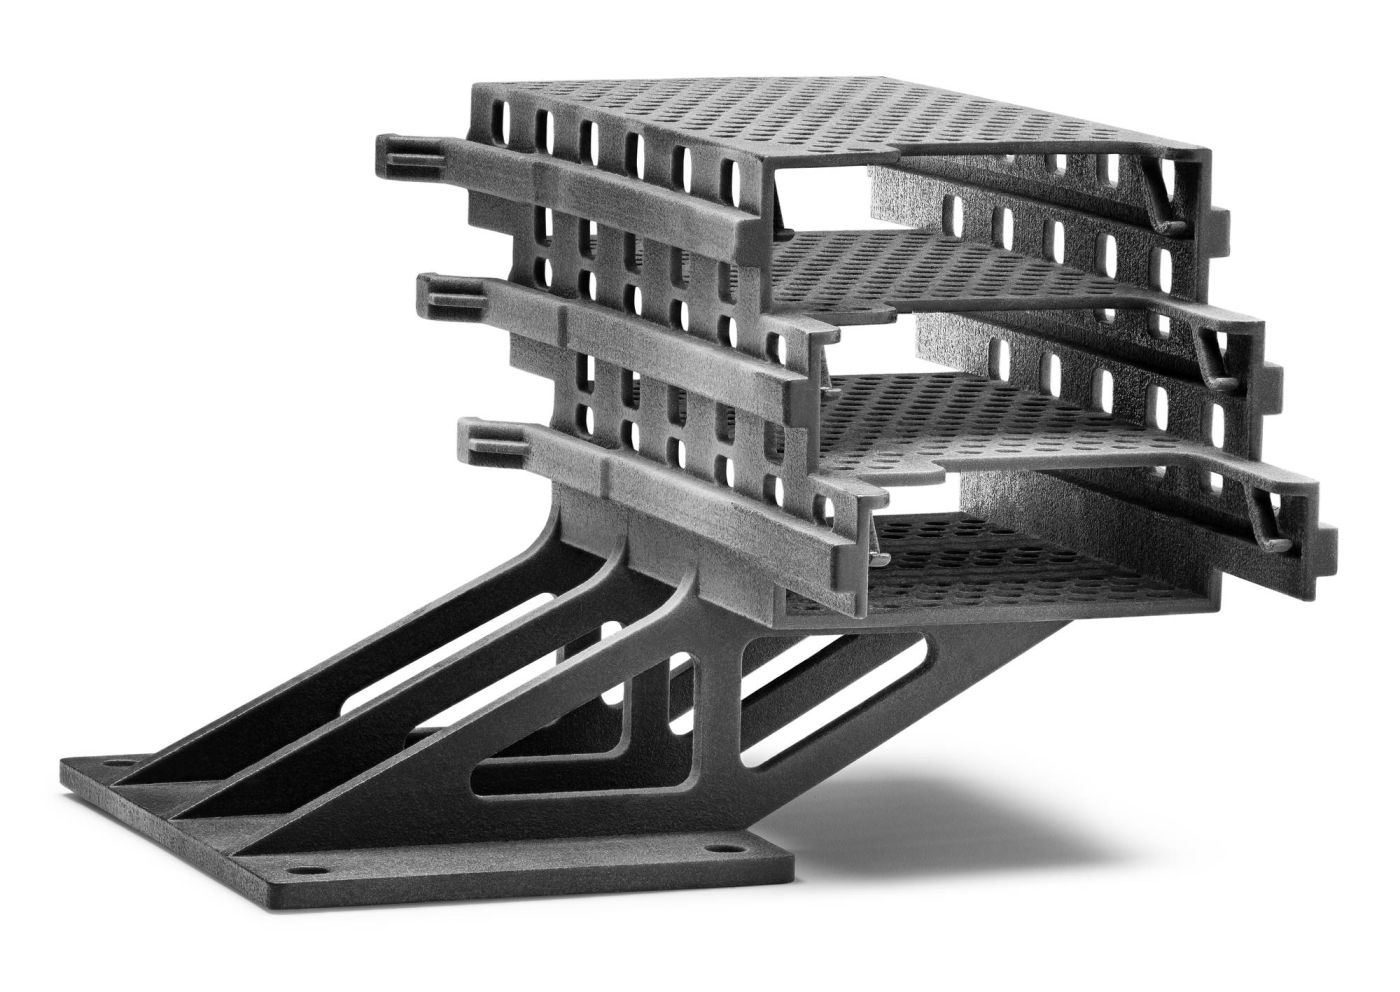 Leiterplattengehäuse und -halterung, 3D-gedruckt mit dem Stratasys H350 3D-Drucker